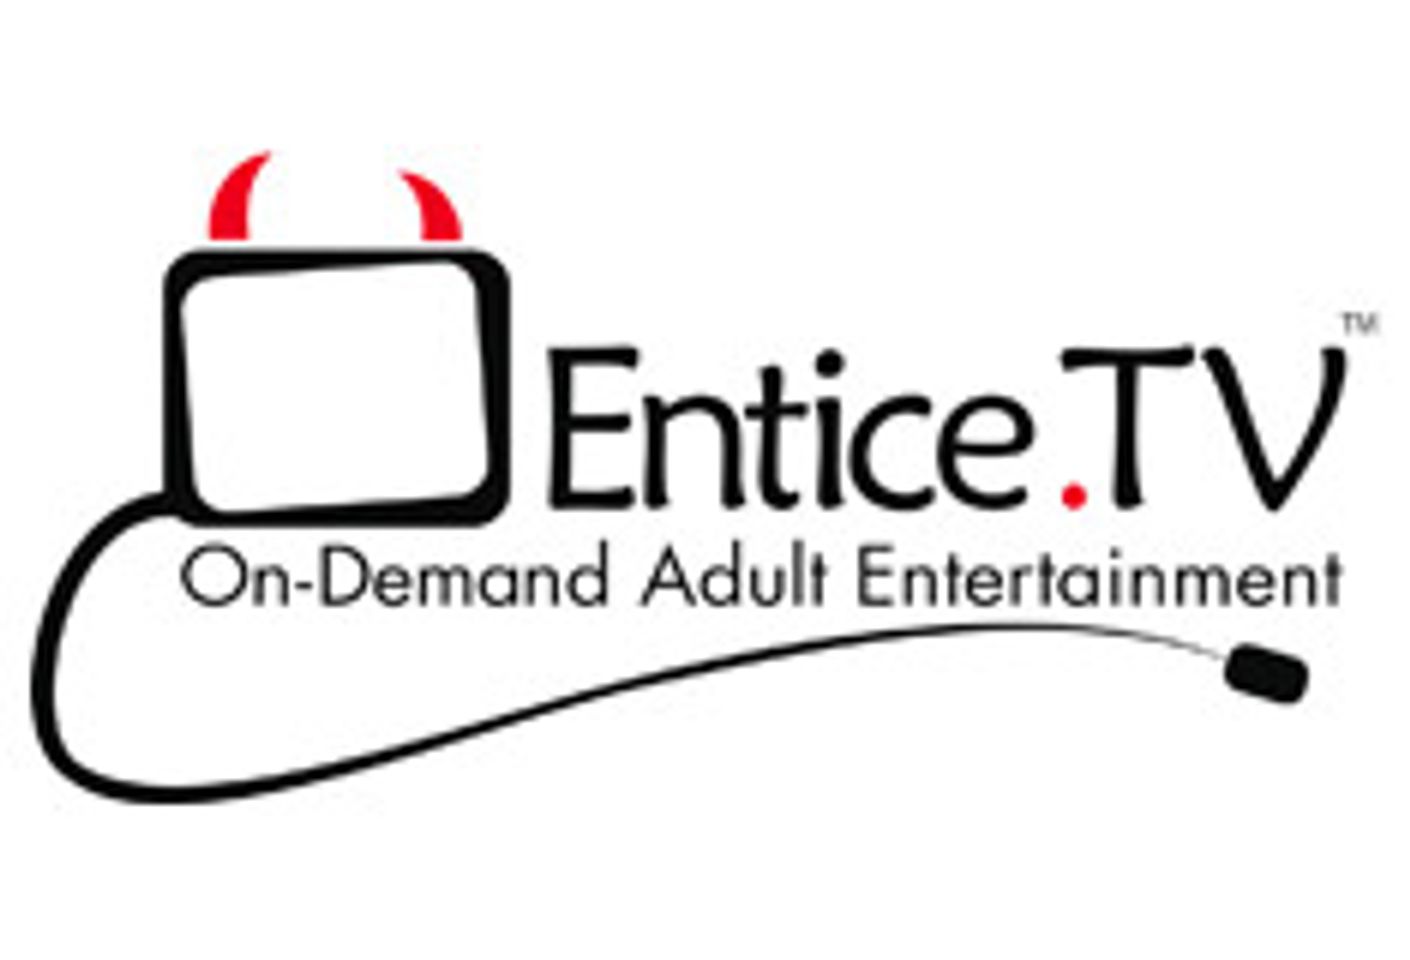 Entice.TV Announces Launch Partners